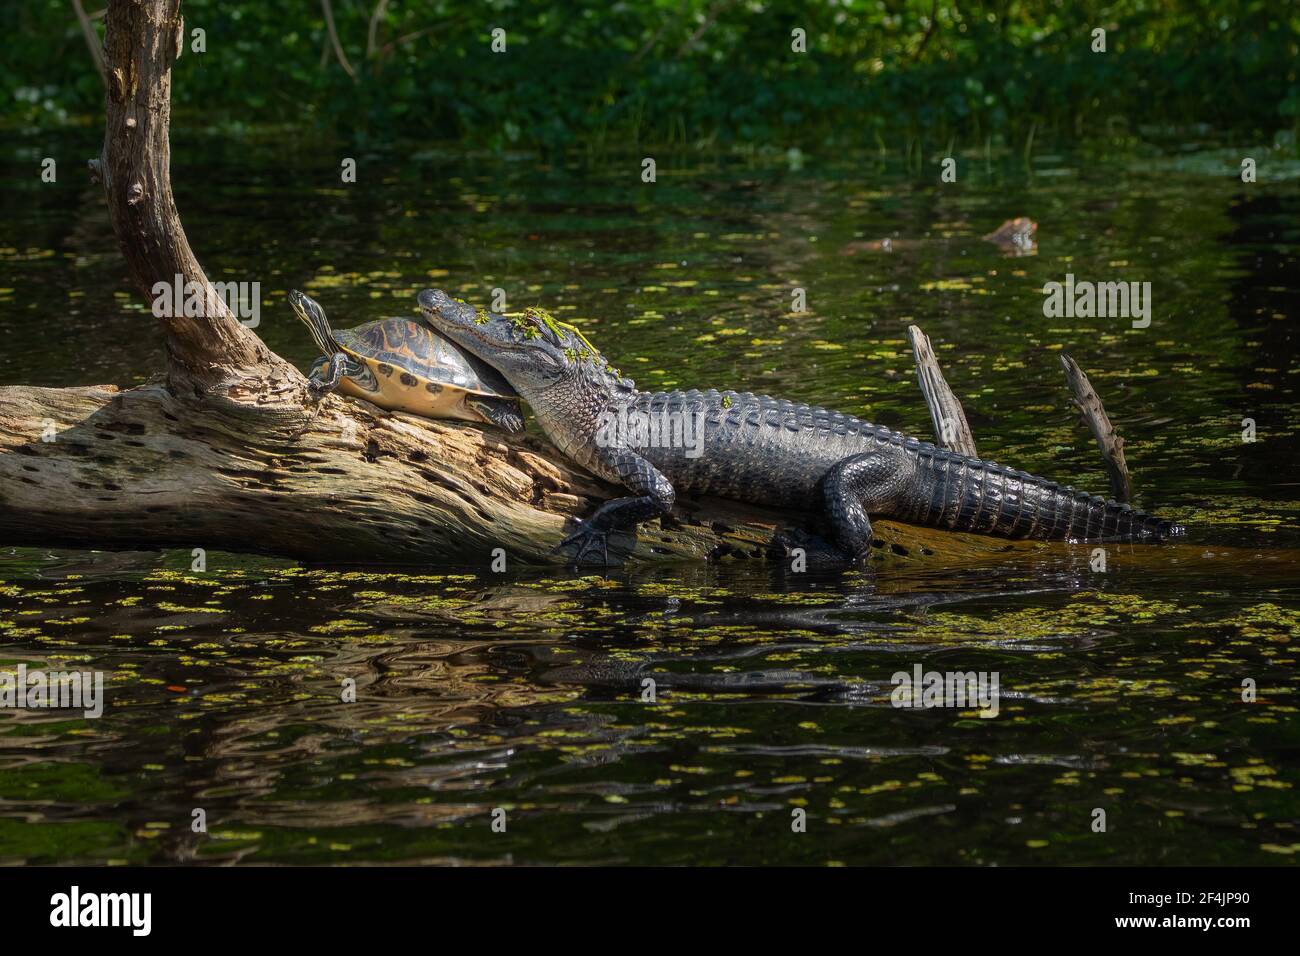 Ein Alligator, der seinen Kopf auf dem Rücken einer Schildkröte ruht, während er sich auf einem Baumstamm sonnen. Stockfoto